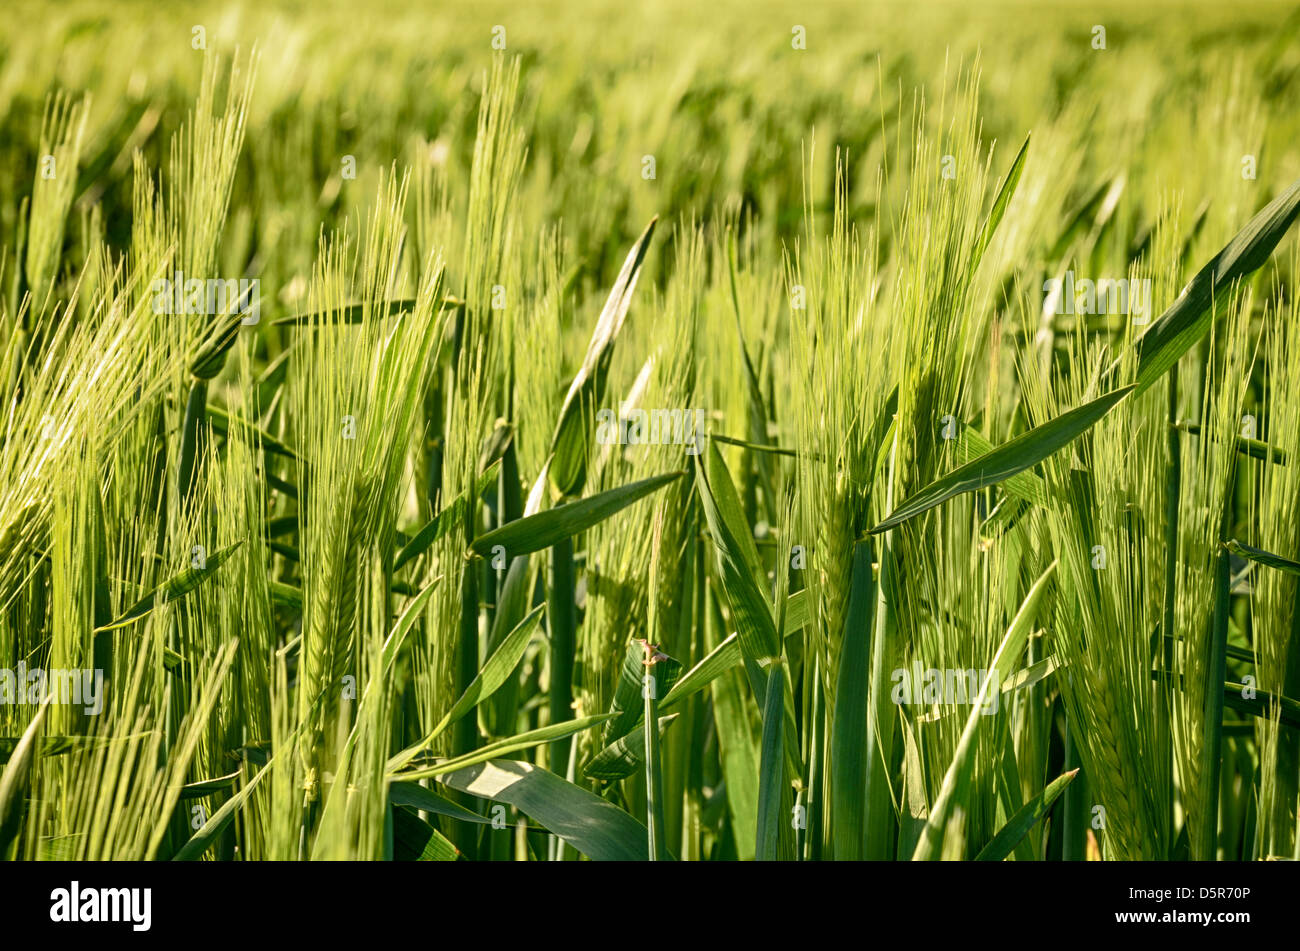 Junge grüne Gerste Hühneraugen wachsen in einem Feld Stockfoto